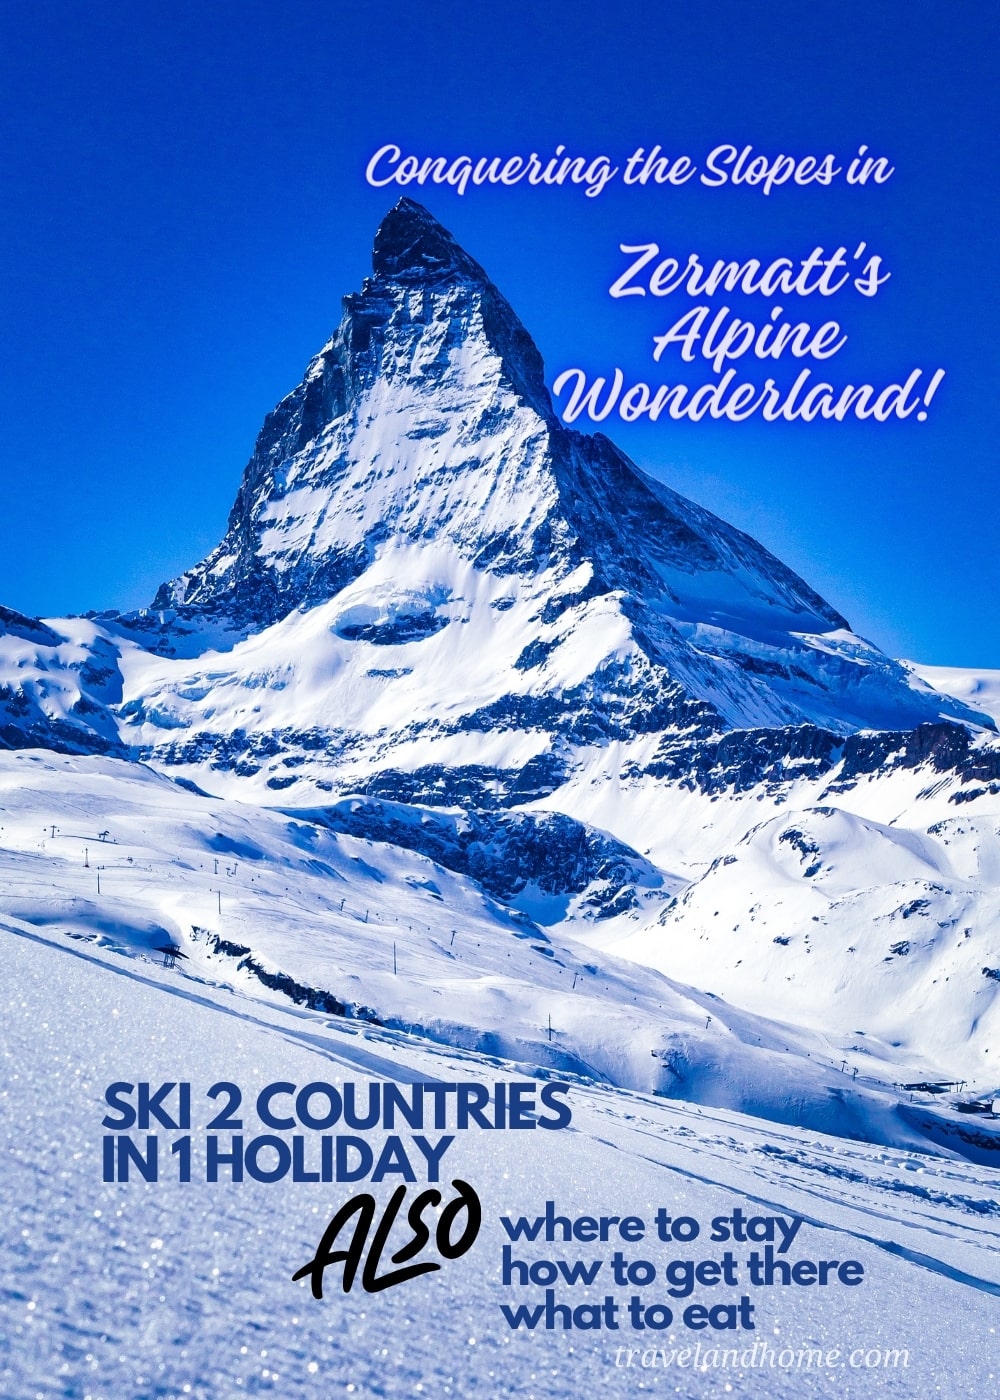 Ski Slopes in Zermatt, where to stay in Zermatt, what to eat in Zermatt, how to get to Zermatt, ski holiday Zermatt min